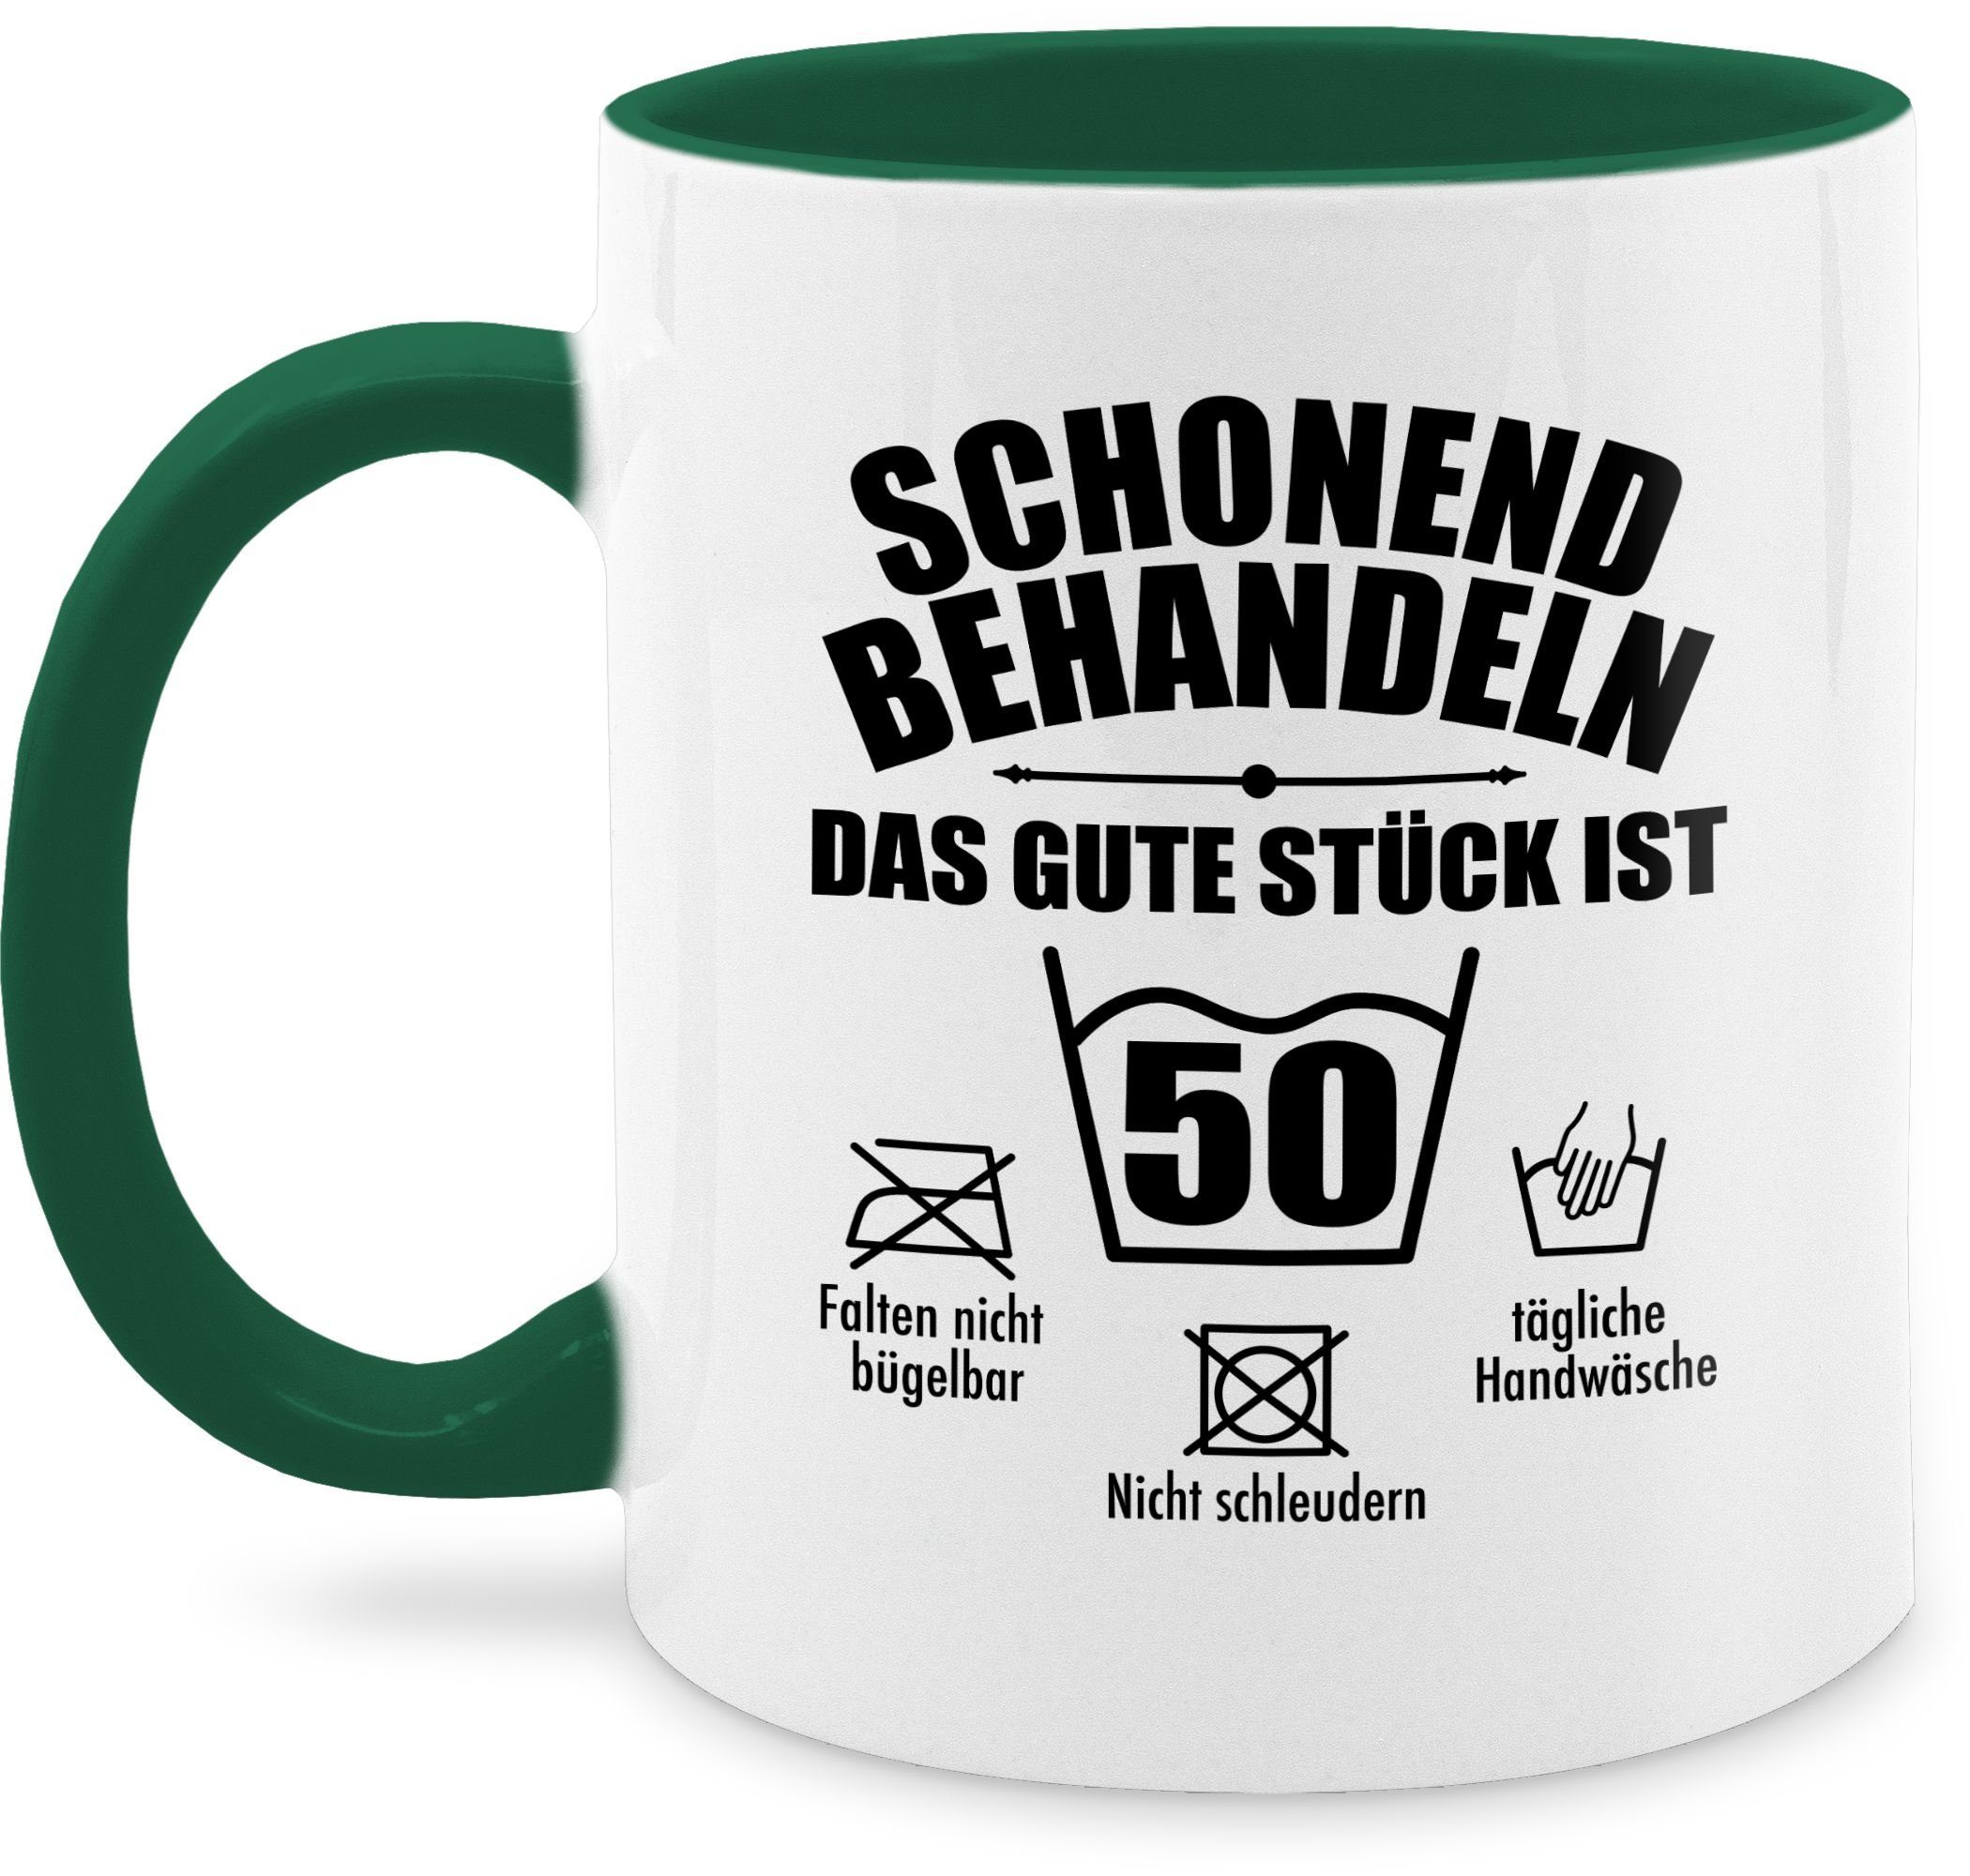 fünfzig, Petrolgrün Shirtracer Geburtstag behandeln das Stück Tasse 50. ist gute Schonend 3 Keramik, Tasse